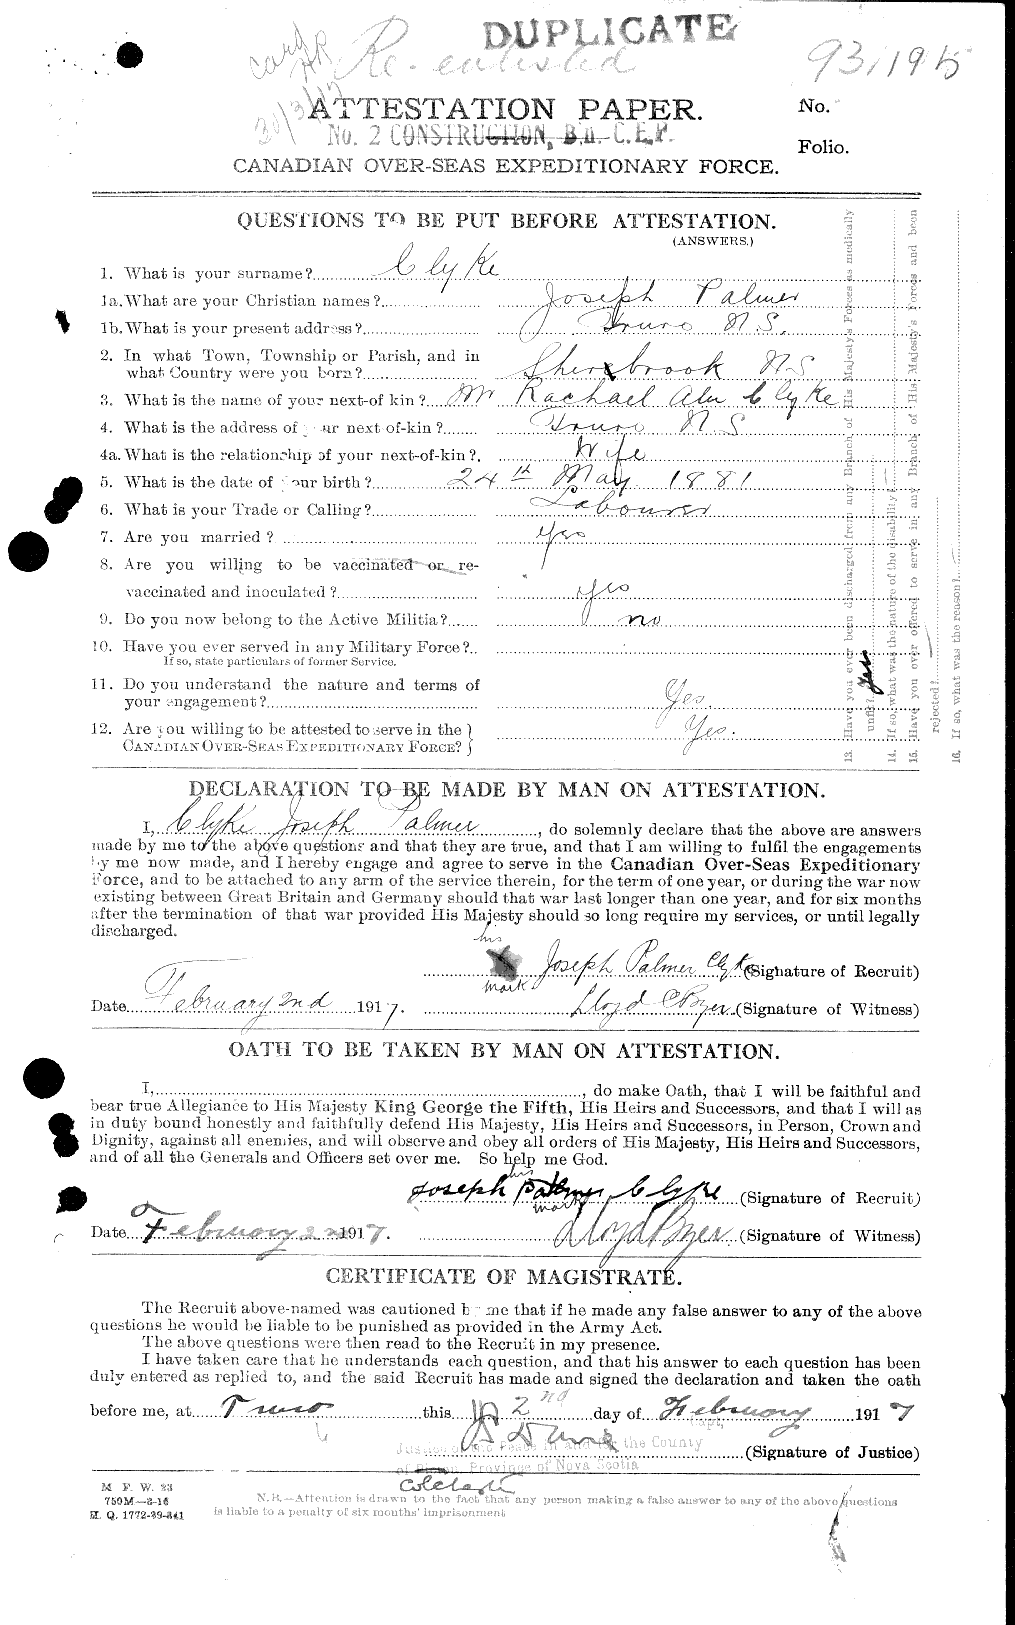 Dossiers du Personnel de la Première Guerre mondiale - CEC 026324a